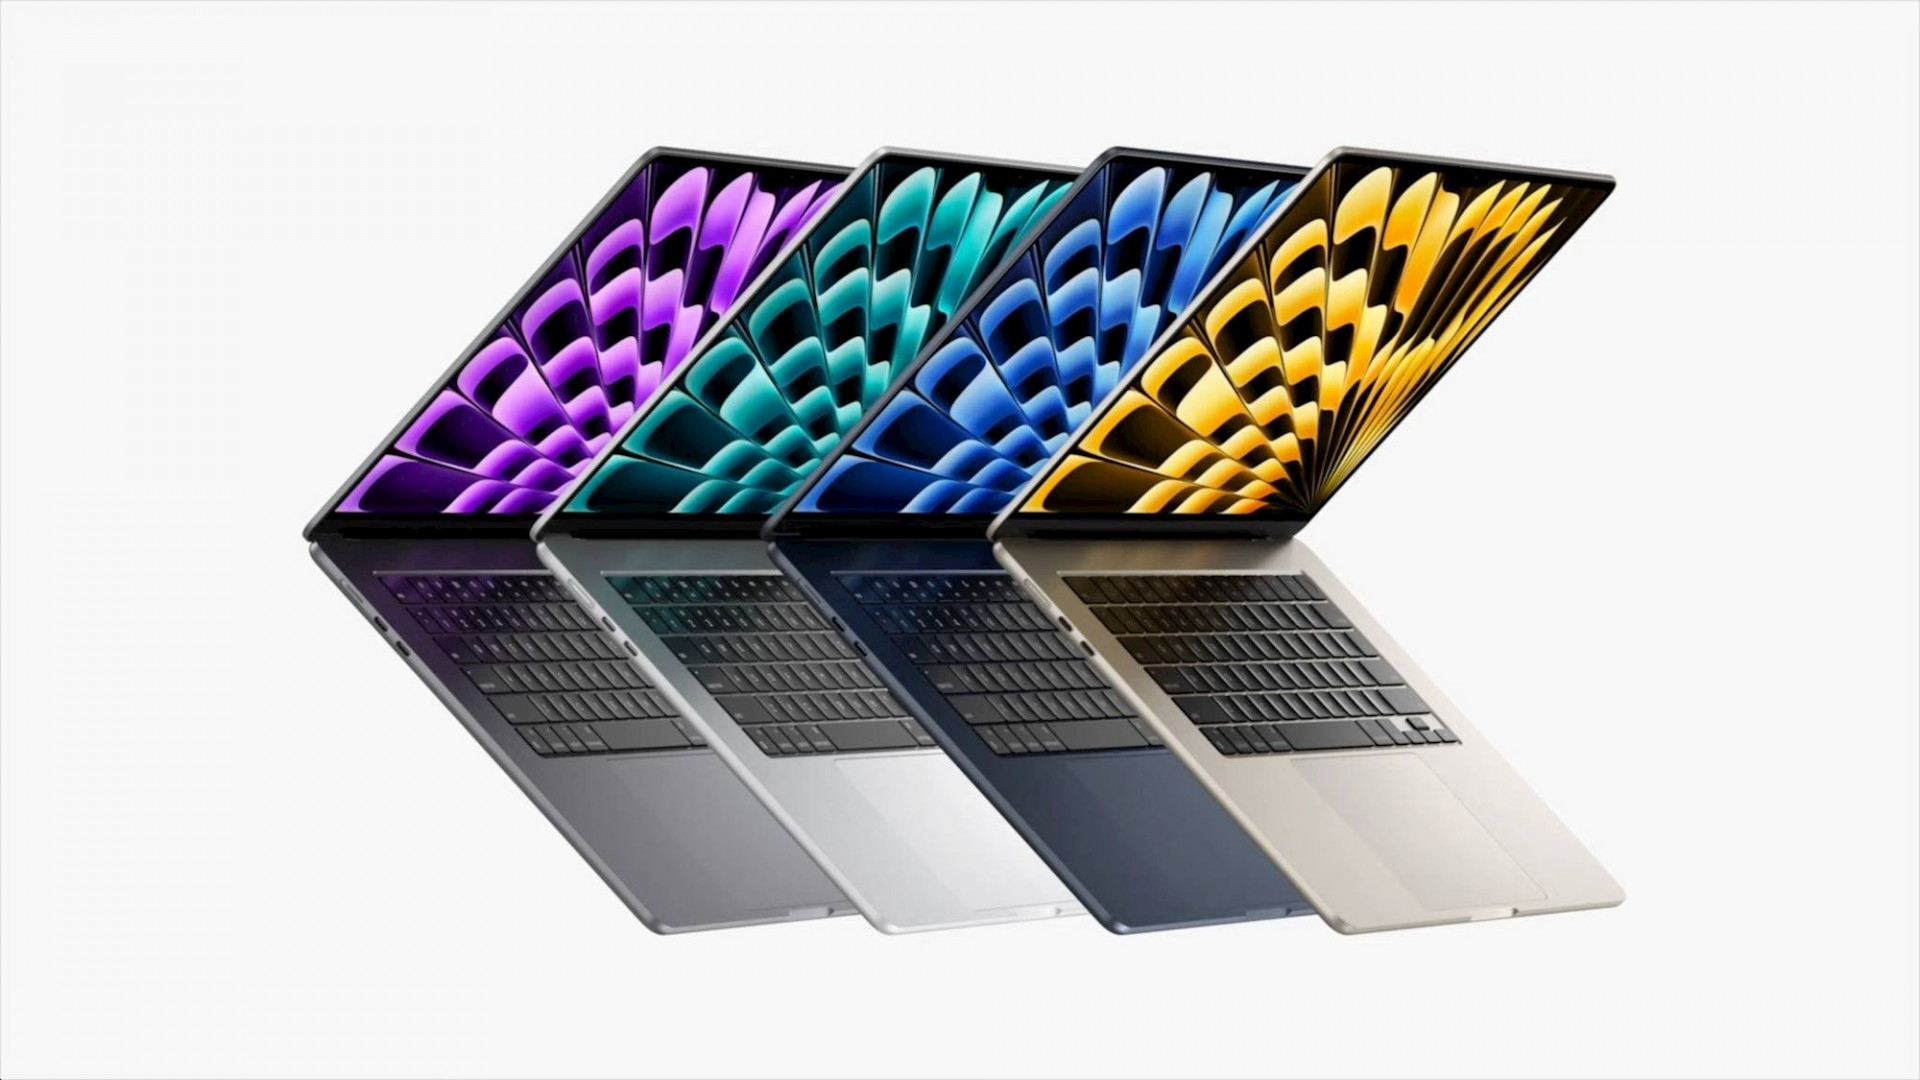 Macbook Air mới có kích thước to nhất từ trước tới nay.
